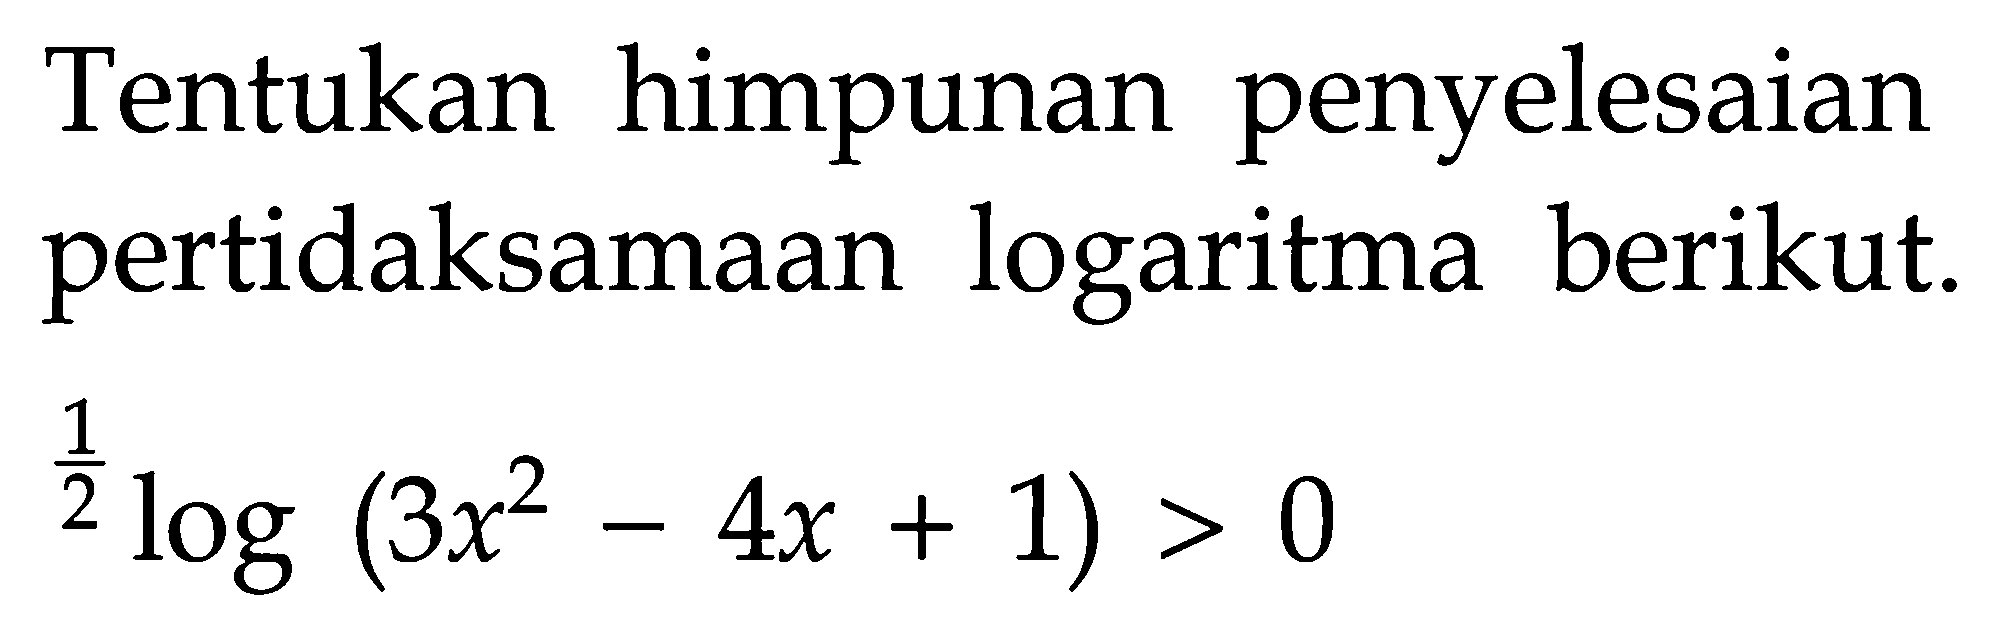 Tentukan himpunan penyelesaian pertidaksamaan logaritma berikut. 1/2 log (3x^2 - 4x + 1) > 0